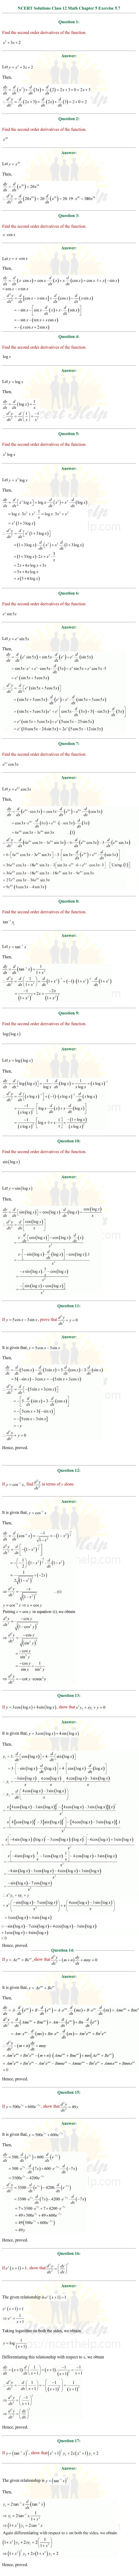 ex.5.7 Class 12 Math Chapter 5 ncert solutions